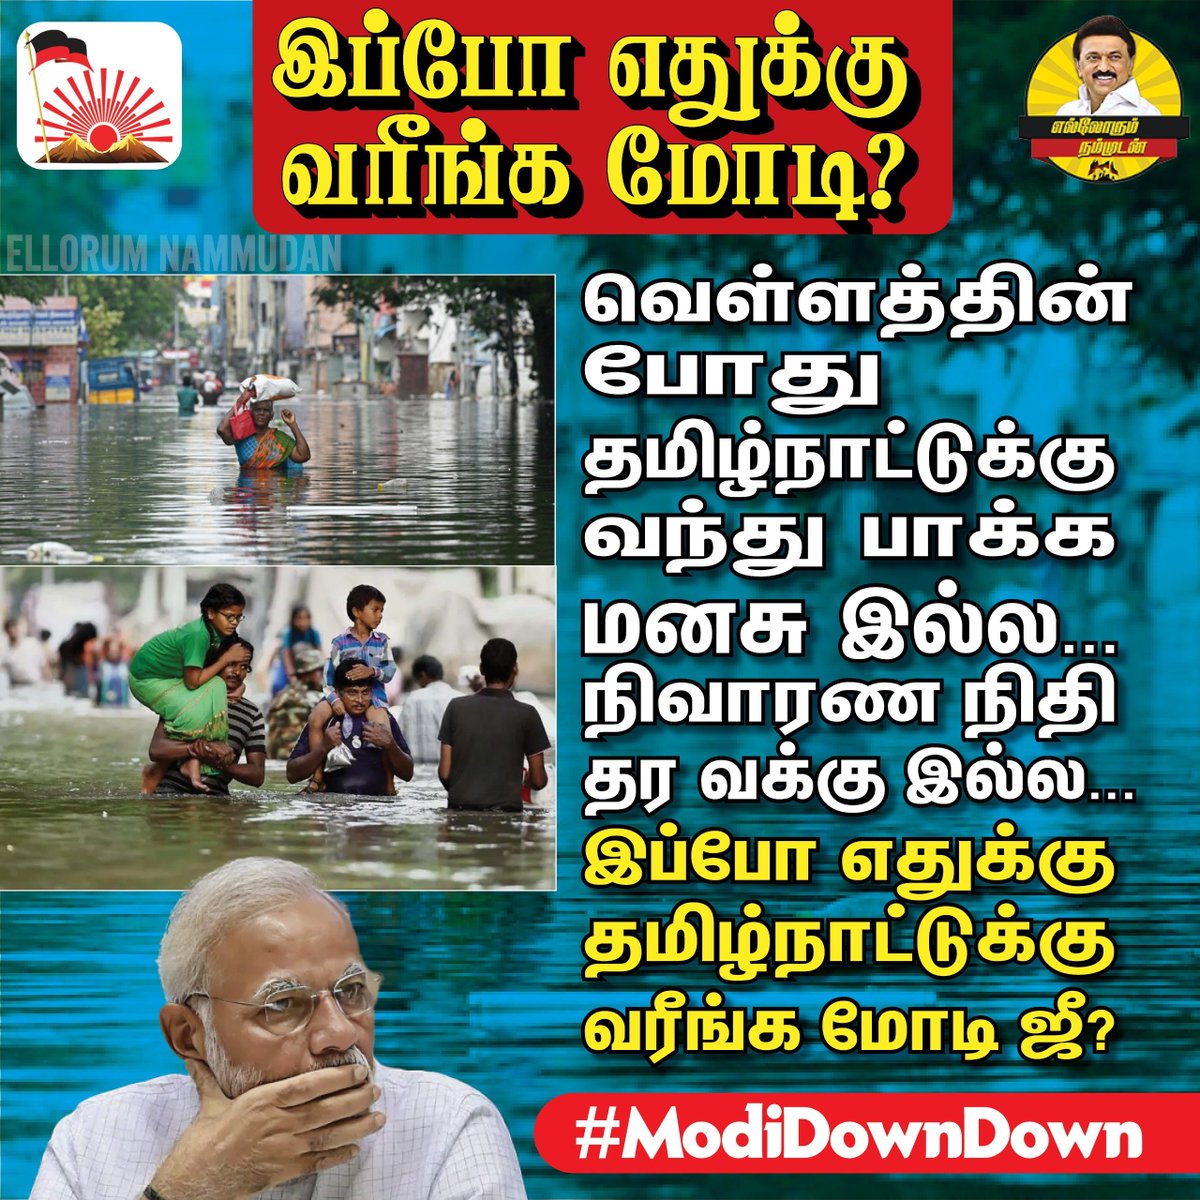 வெள்ளத்தின்போது எட்டிக்கூட பார்க்காத நீங்க, இப்போ எதுக்கு வரீங்க Mr.29 பைசா?

#ModiDownDown #BJPFailsindia #ShamaeonBJP #2024Election #SaveindiafromBJP #ChennaiFloodRelief #FloodRelief